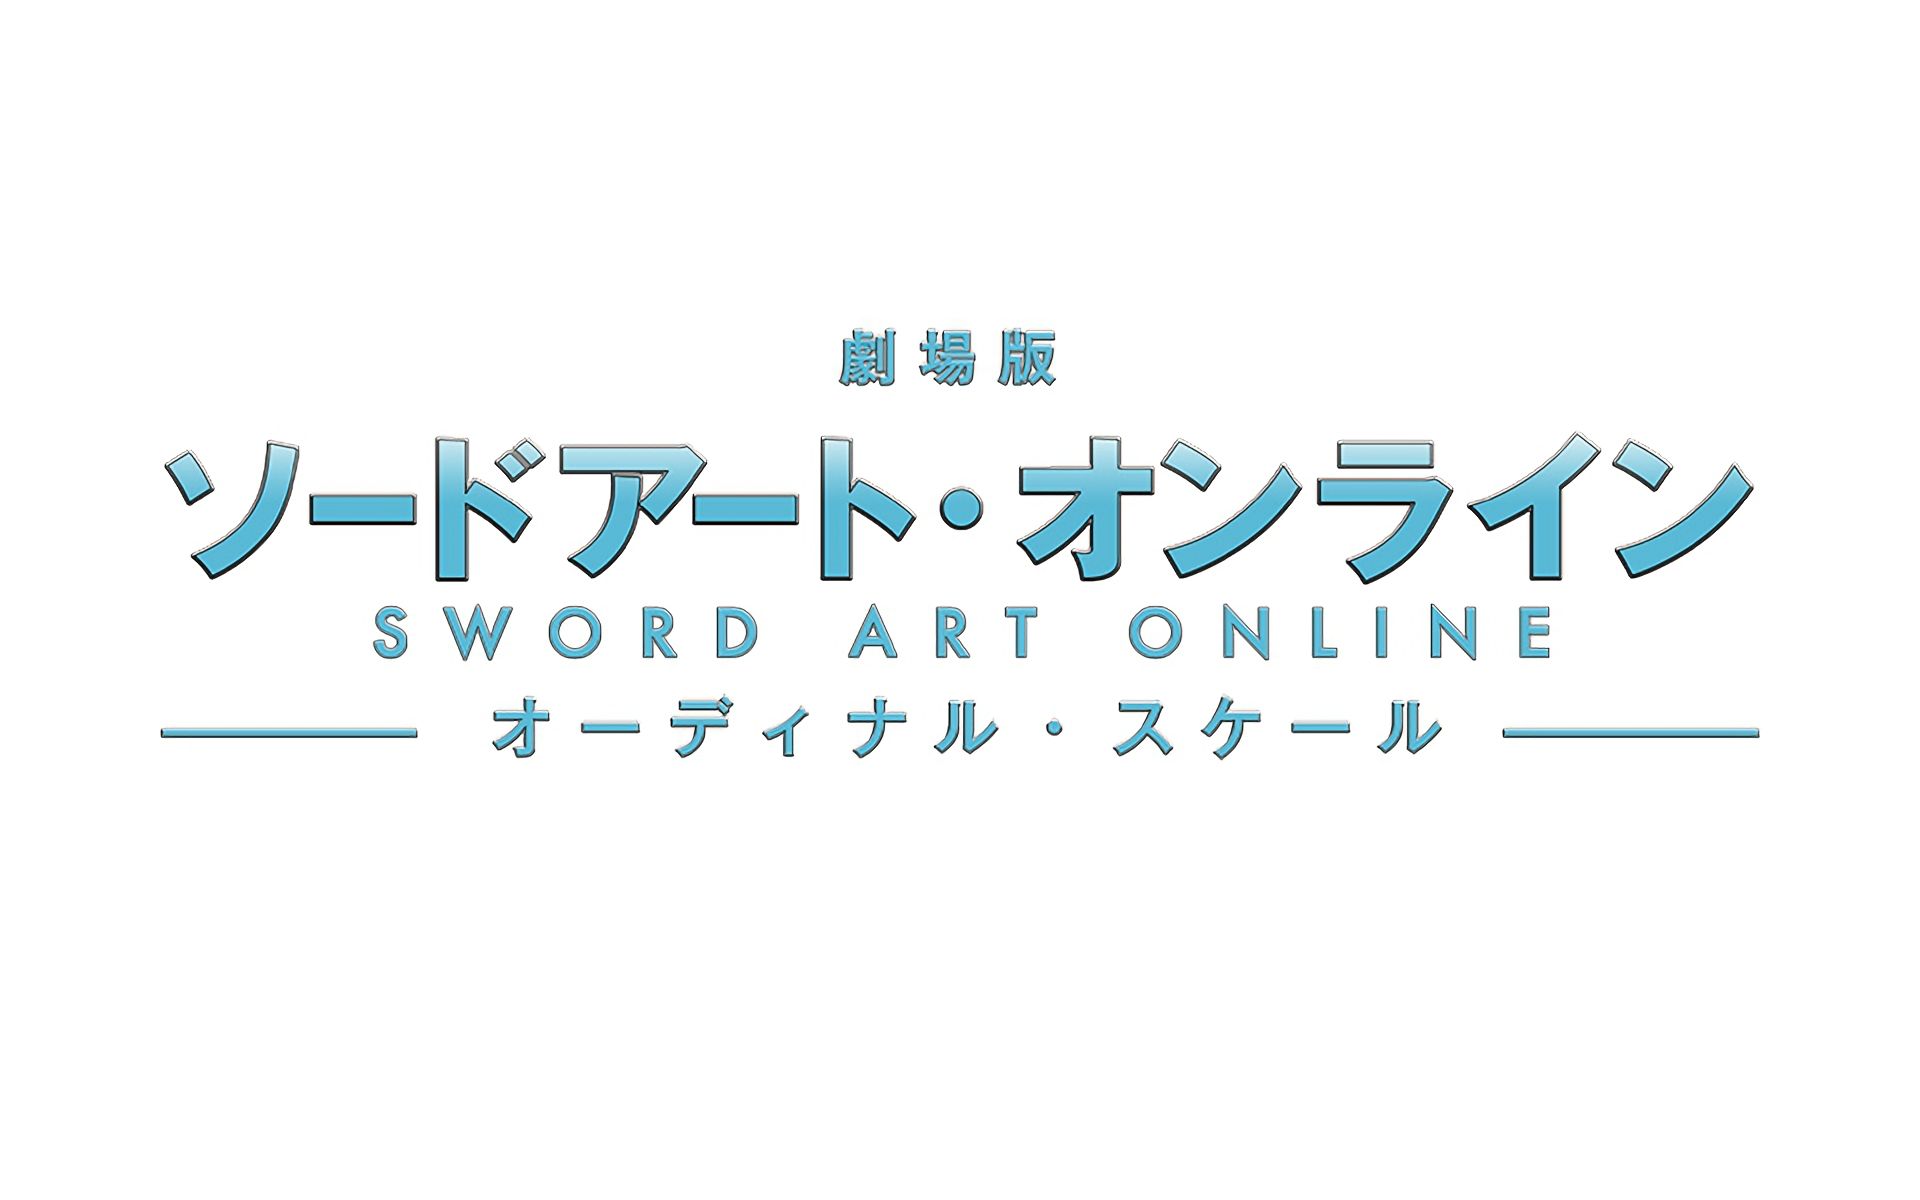 405785 Заставки и Обои Sword Art Online Порядковая Шкала на телефон. Скачать  картинки бесплатно